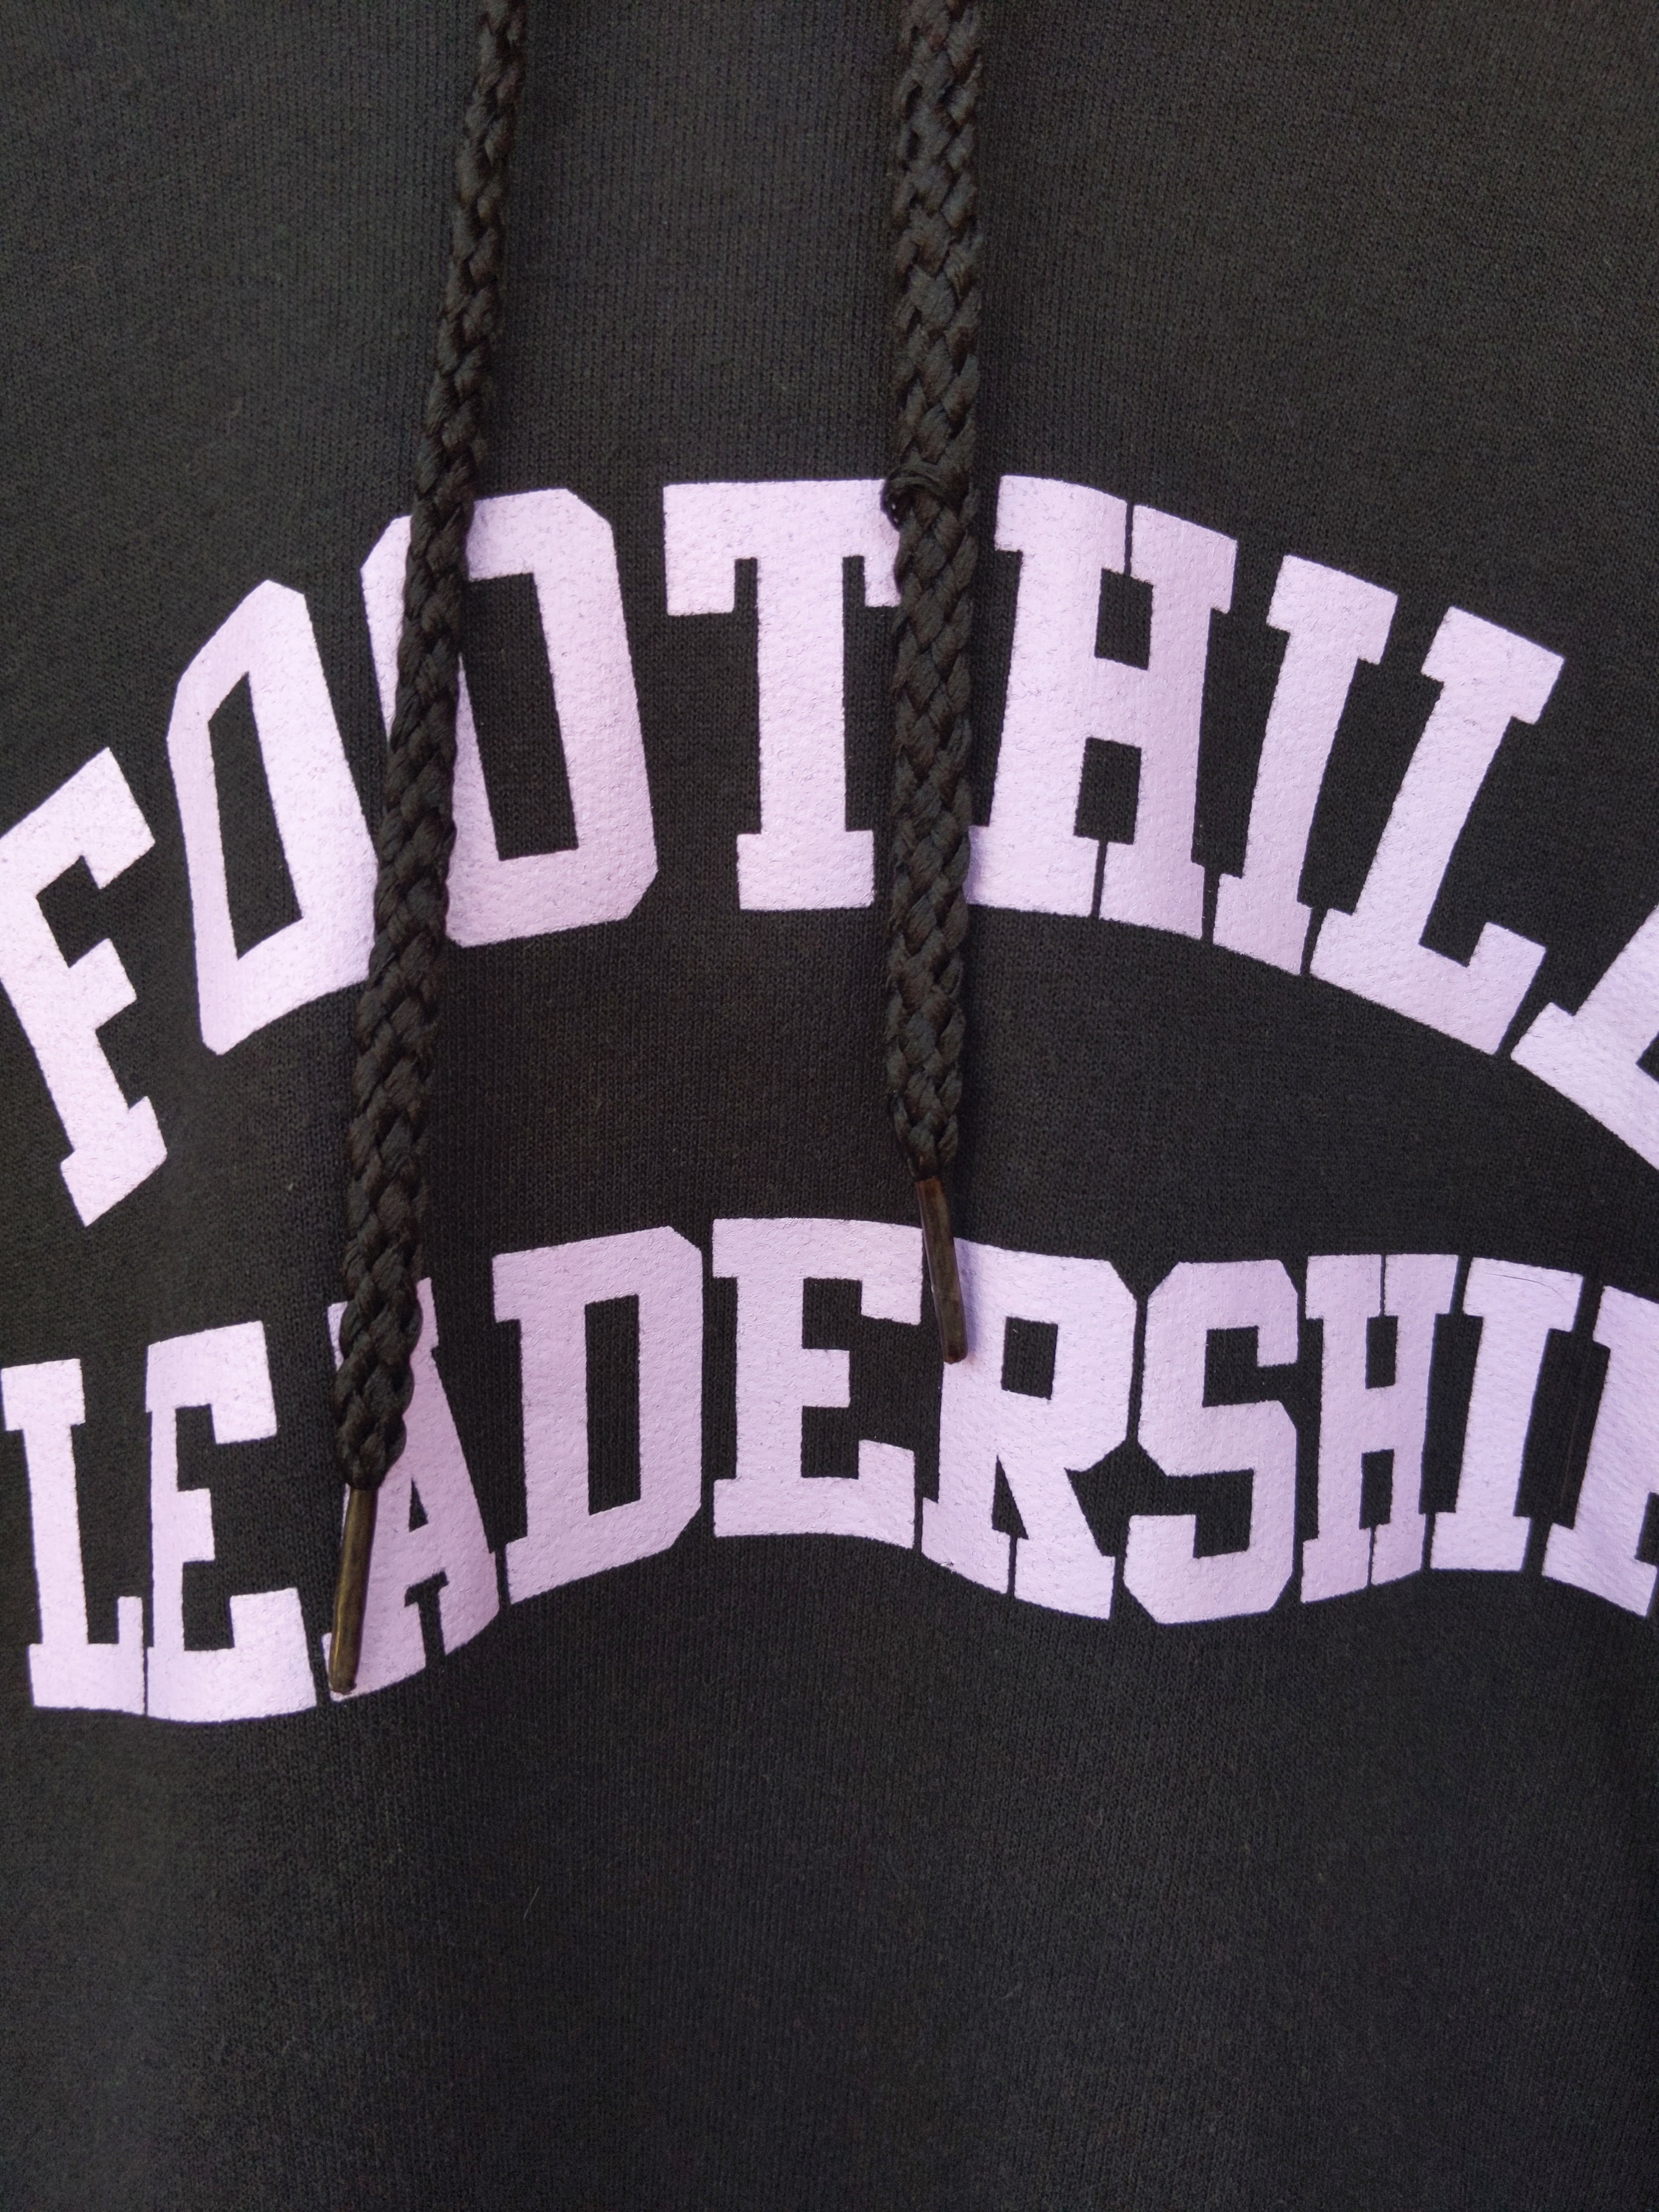 Retro US Foothill leadership hoodie S/M